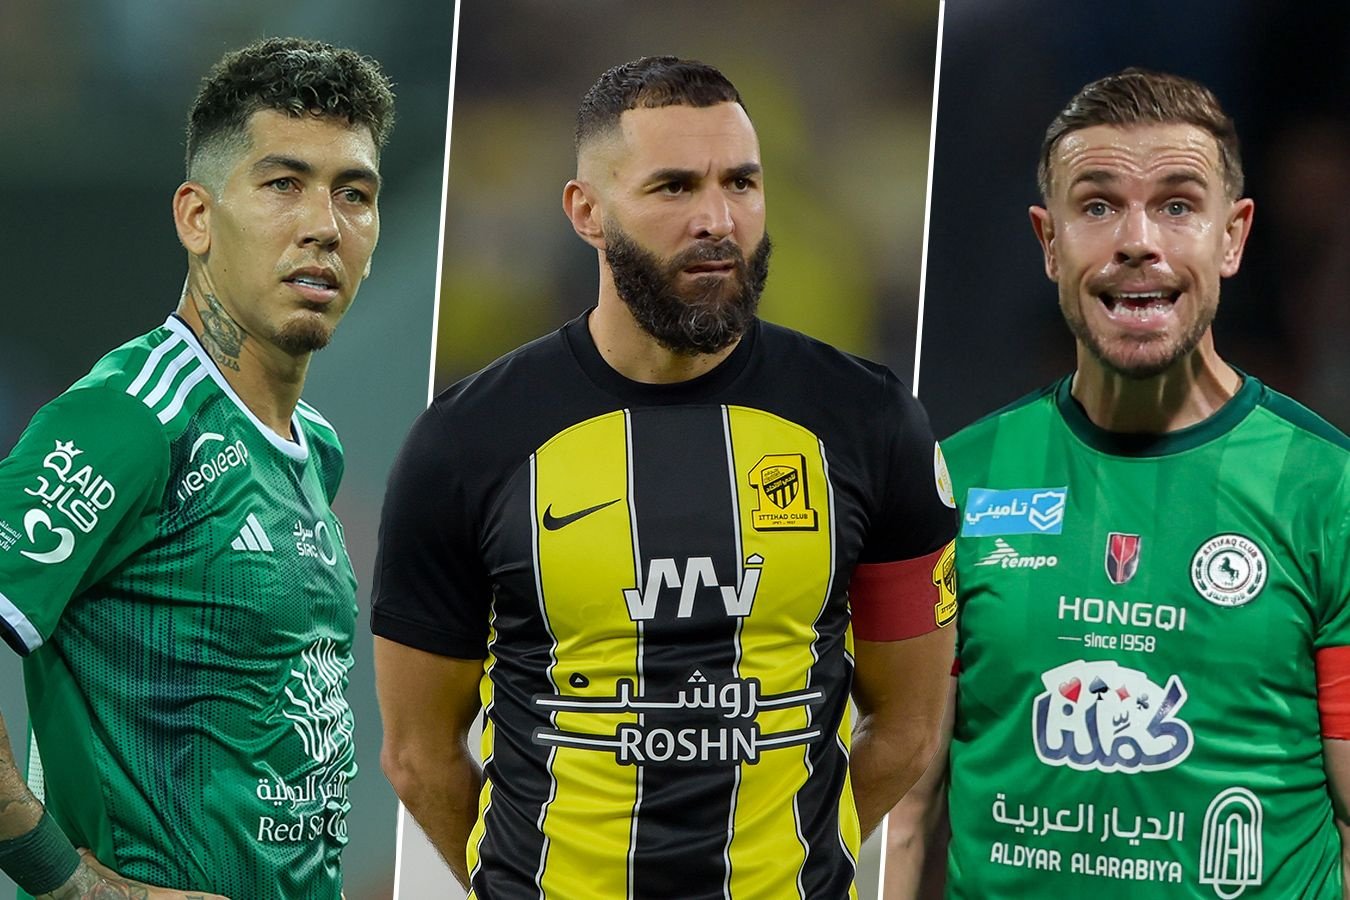 Некоторые звезды футбола бегут из Саудовской Аравии. Многое не так, как они представляли